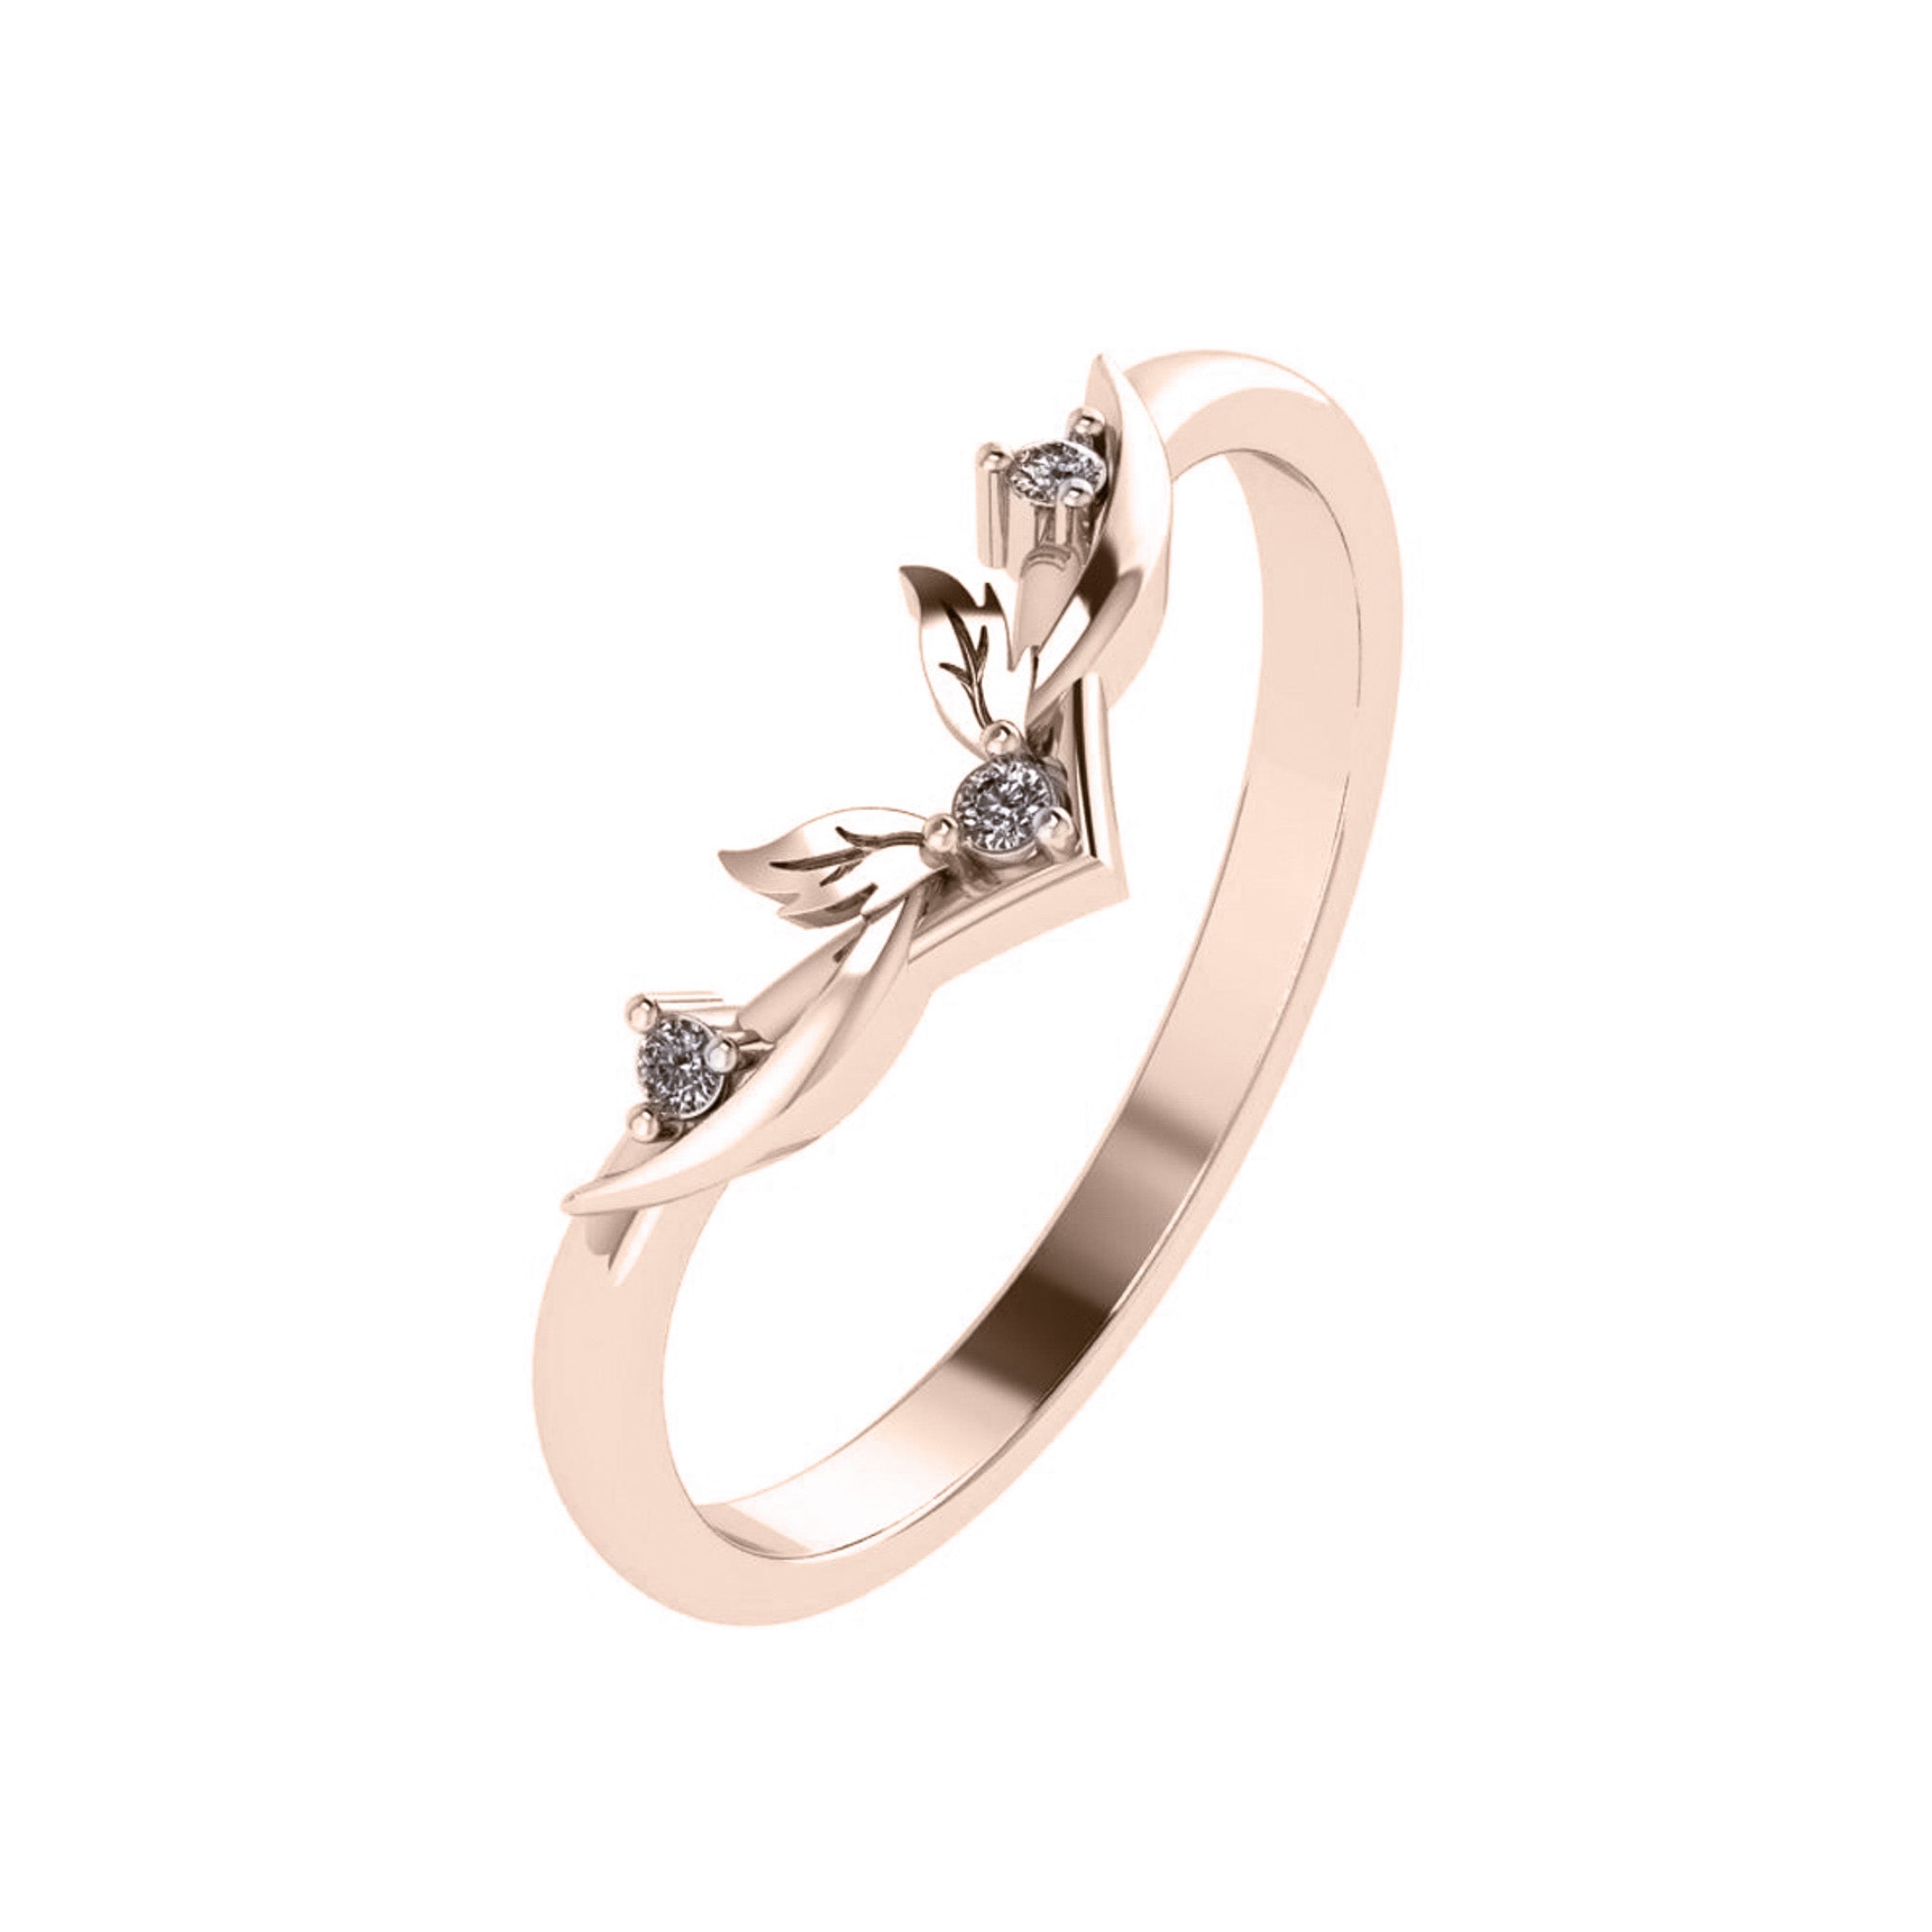 Verbena | matching wedding band with 3 gemstones - Eden Garden Jewelry™